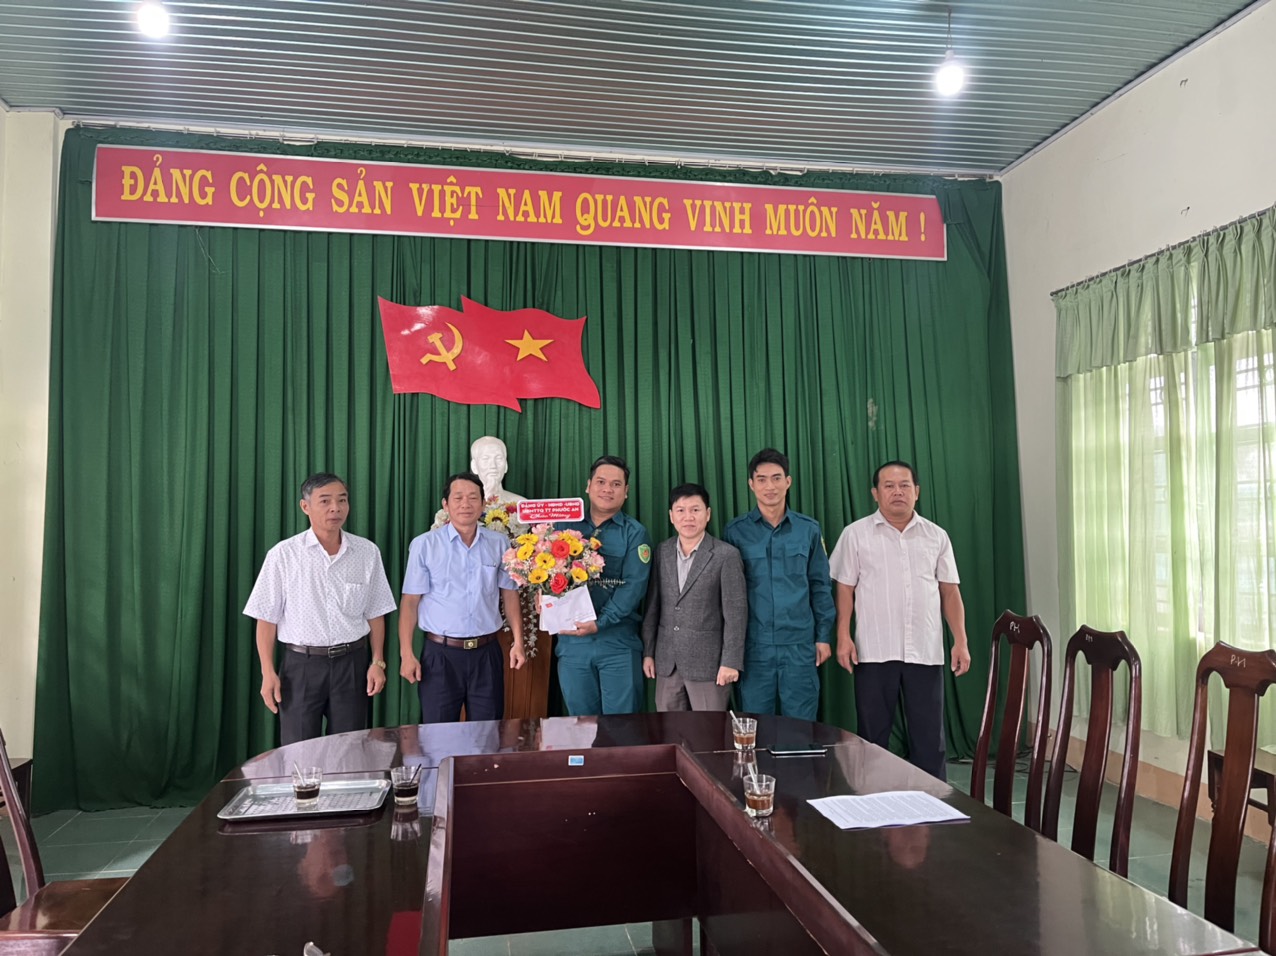 Đảng ủy, HĐND, UBND, UBMT tổ quốc Việt nam thị trấn Phước An tổ chức  thăm, tặng hoa chúc mừng Ban Chỉ huy Quân sự thị trấn nhân kỷ niệm 78 năm Ngày thành lập Quân đội nhân dân Việt Nam (22/12/1944-22/12/2022).